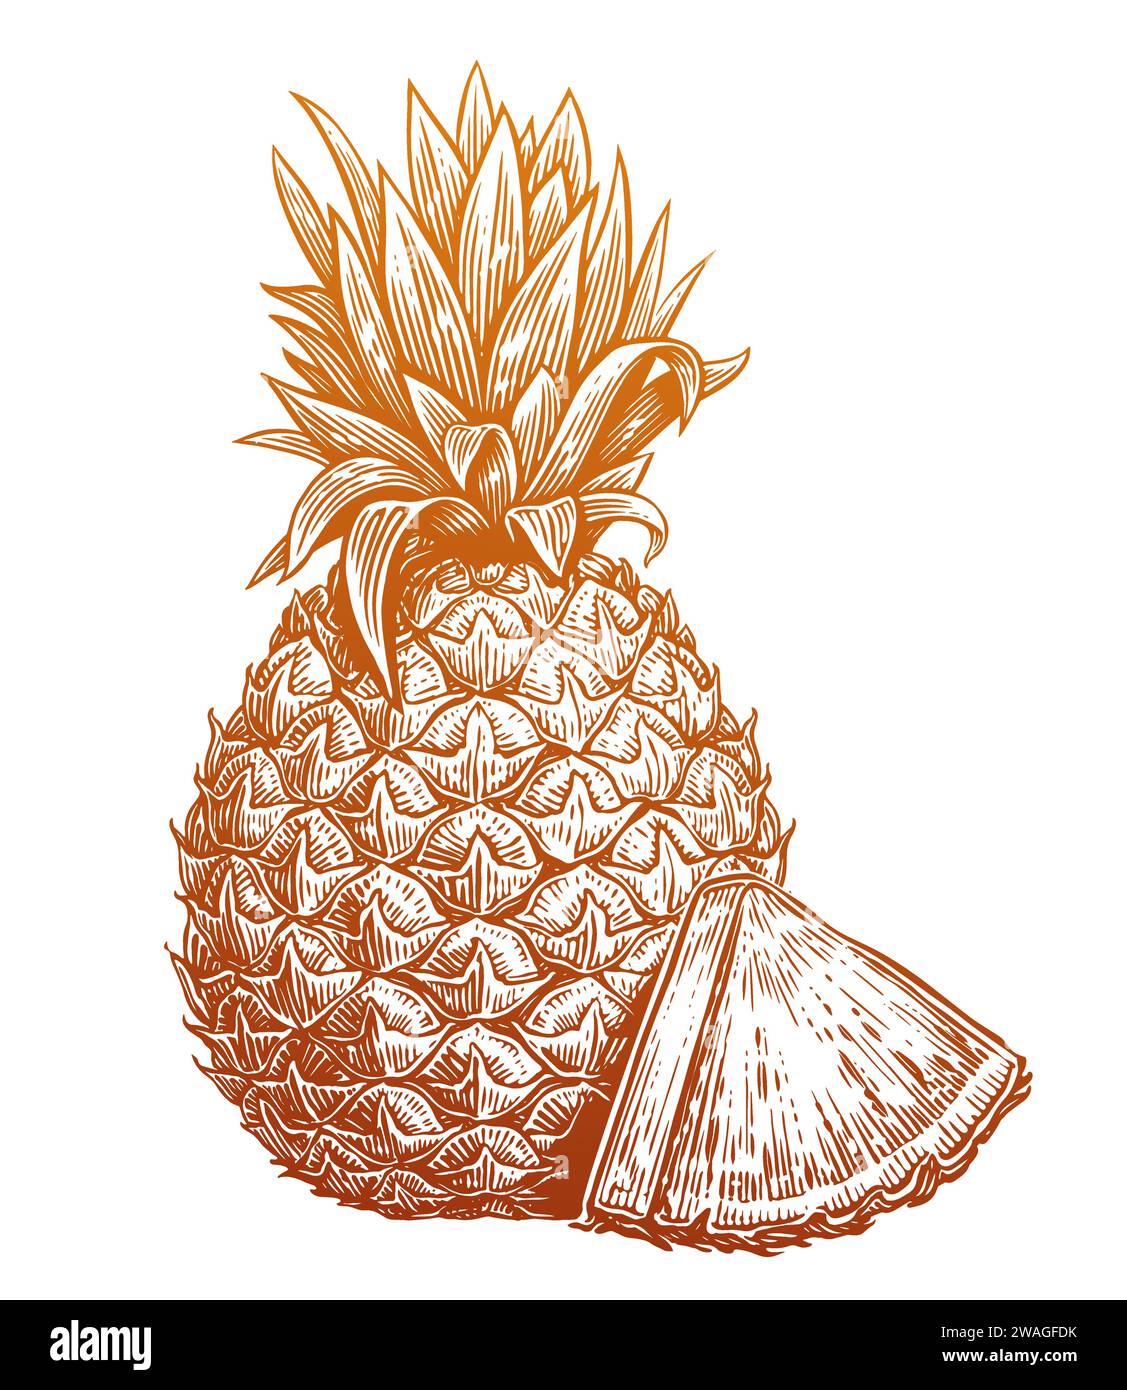 Handgezeichnete Skizze Ananas mit Scheibe. Umweltfreundliches, frisches Essen. Vektor-Illustration der tropischen Früchte Stock Vektor